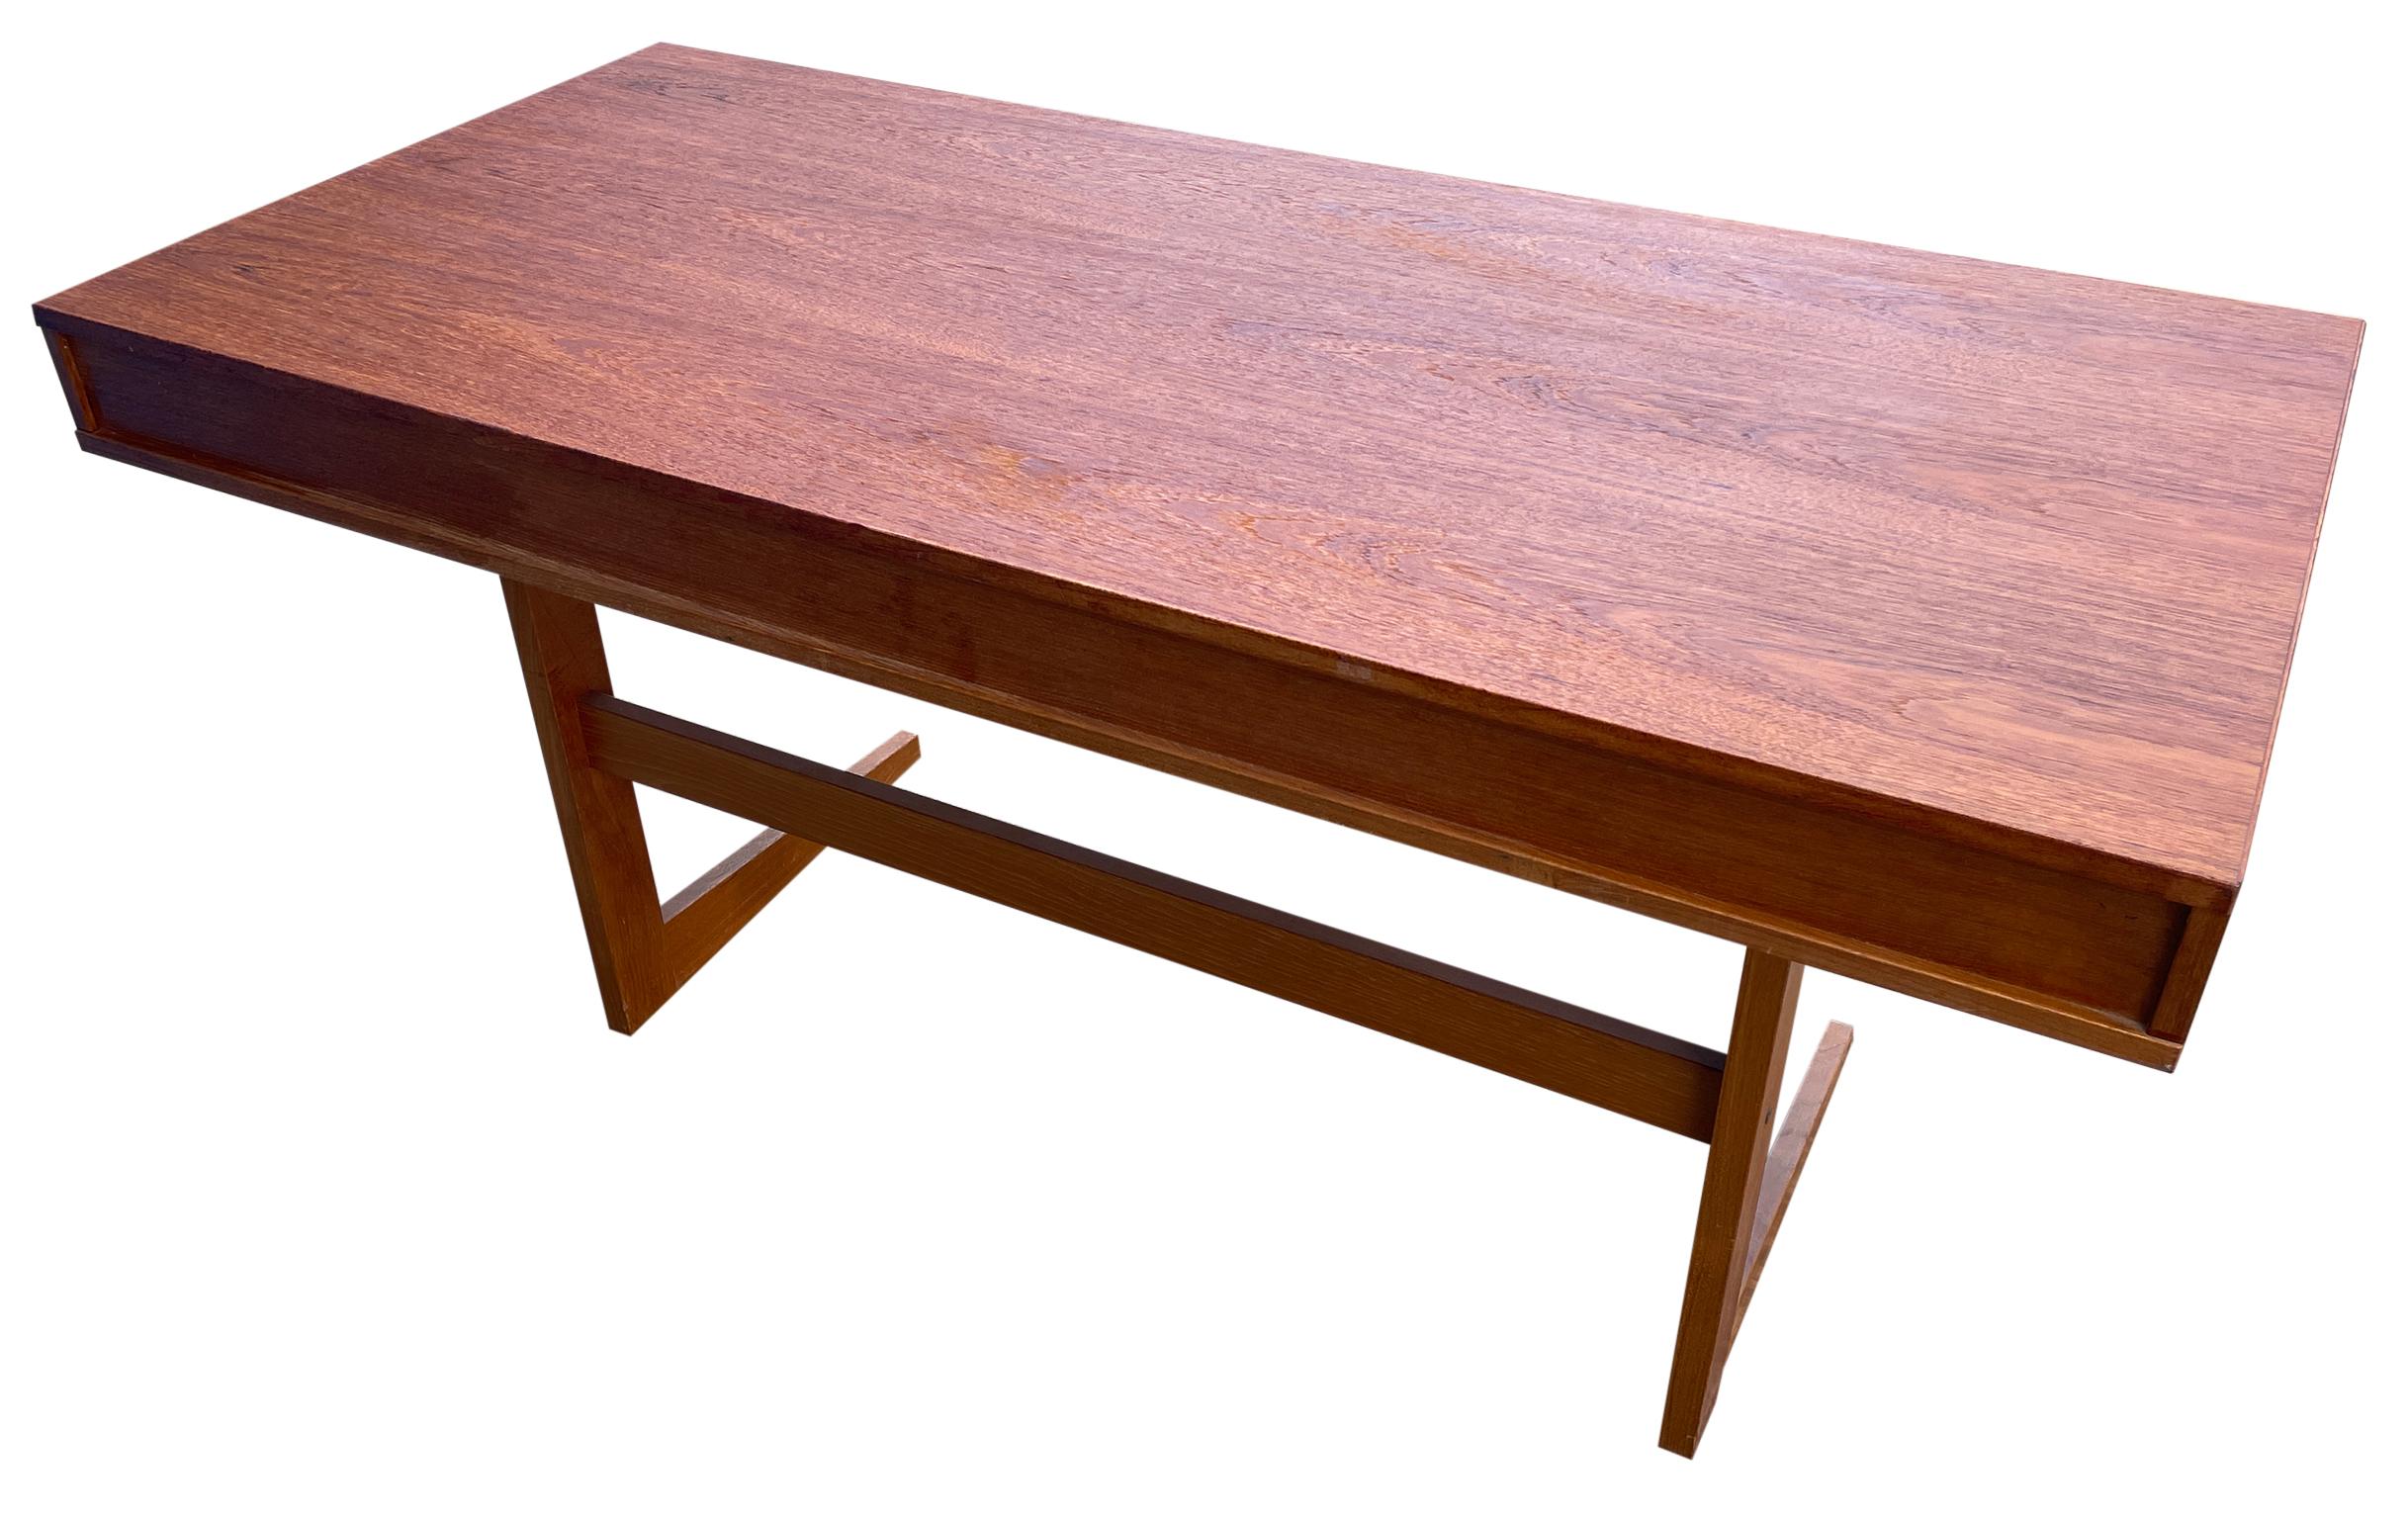 Midcentury Danish Modern teak Desk by Georg Petersens 3 drawer 3